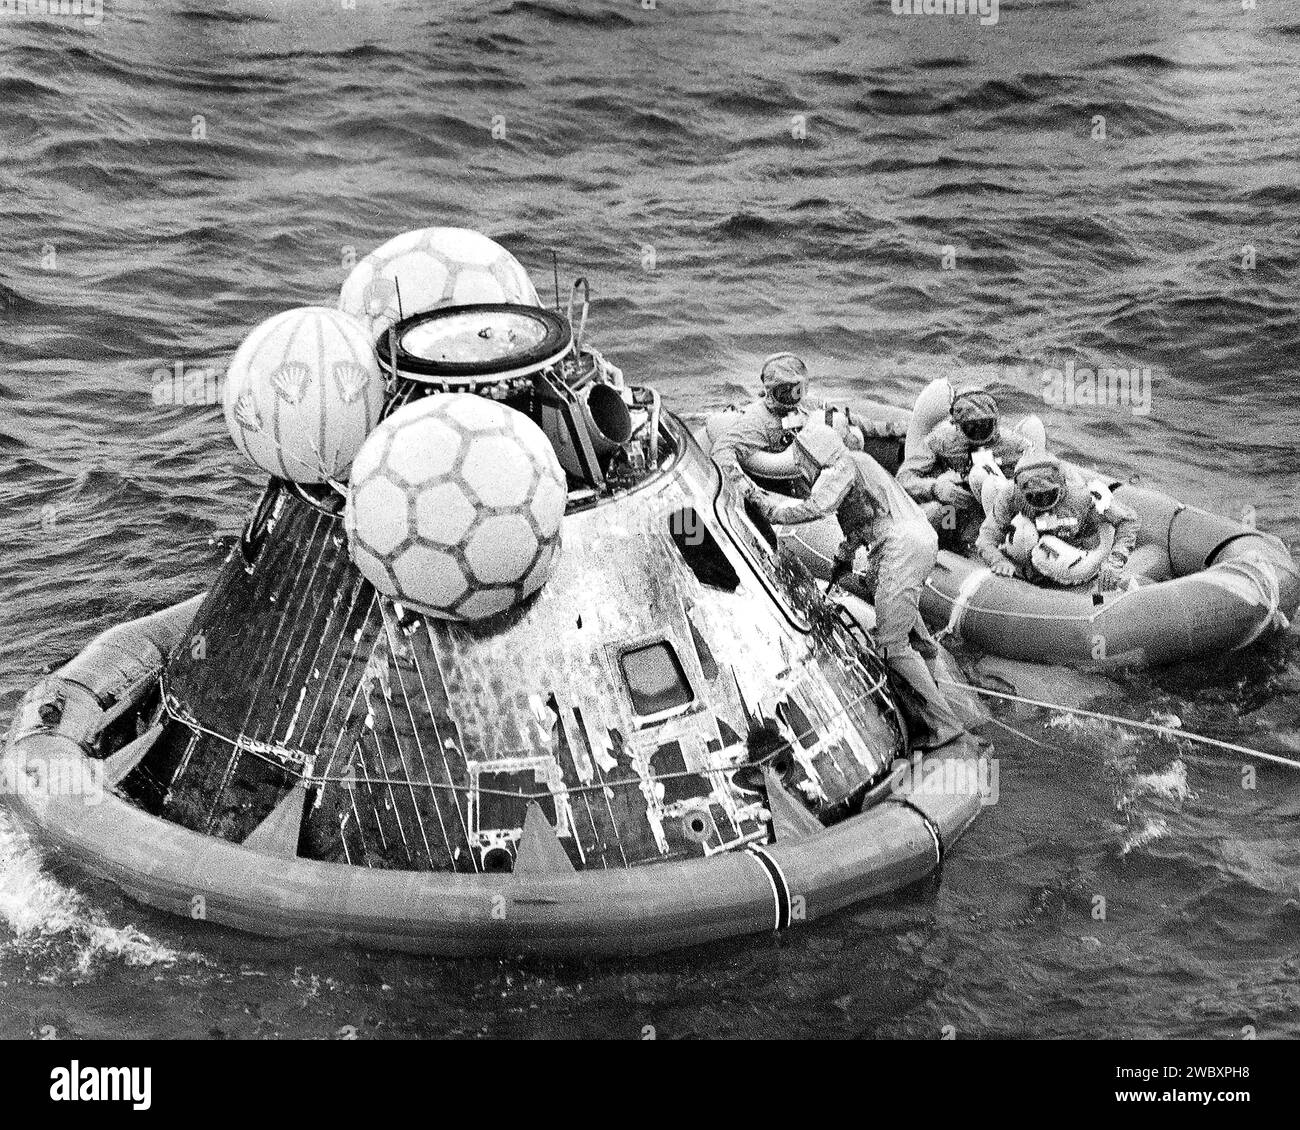 Gli astronauti americani Edwin E. Aldrin, Neil A. Armstrong e Michael Collins in zattera di salvataggio durante l'operazione di recupero del modulo di comando Columbia dopo il successo della missione Apollo 11, la prima missione lunare con equipaggio, Oceano Pacifico, NASA, 24 luglio 1969 Foto Stock